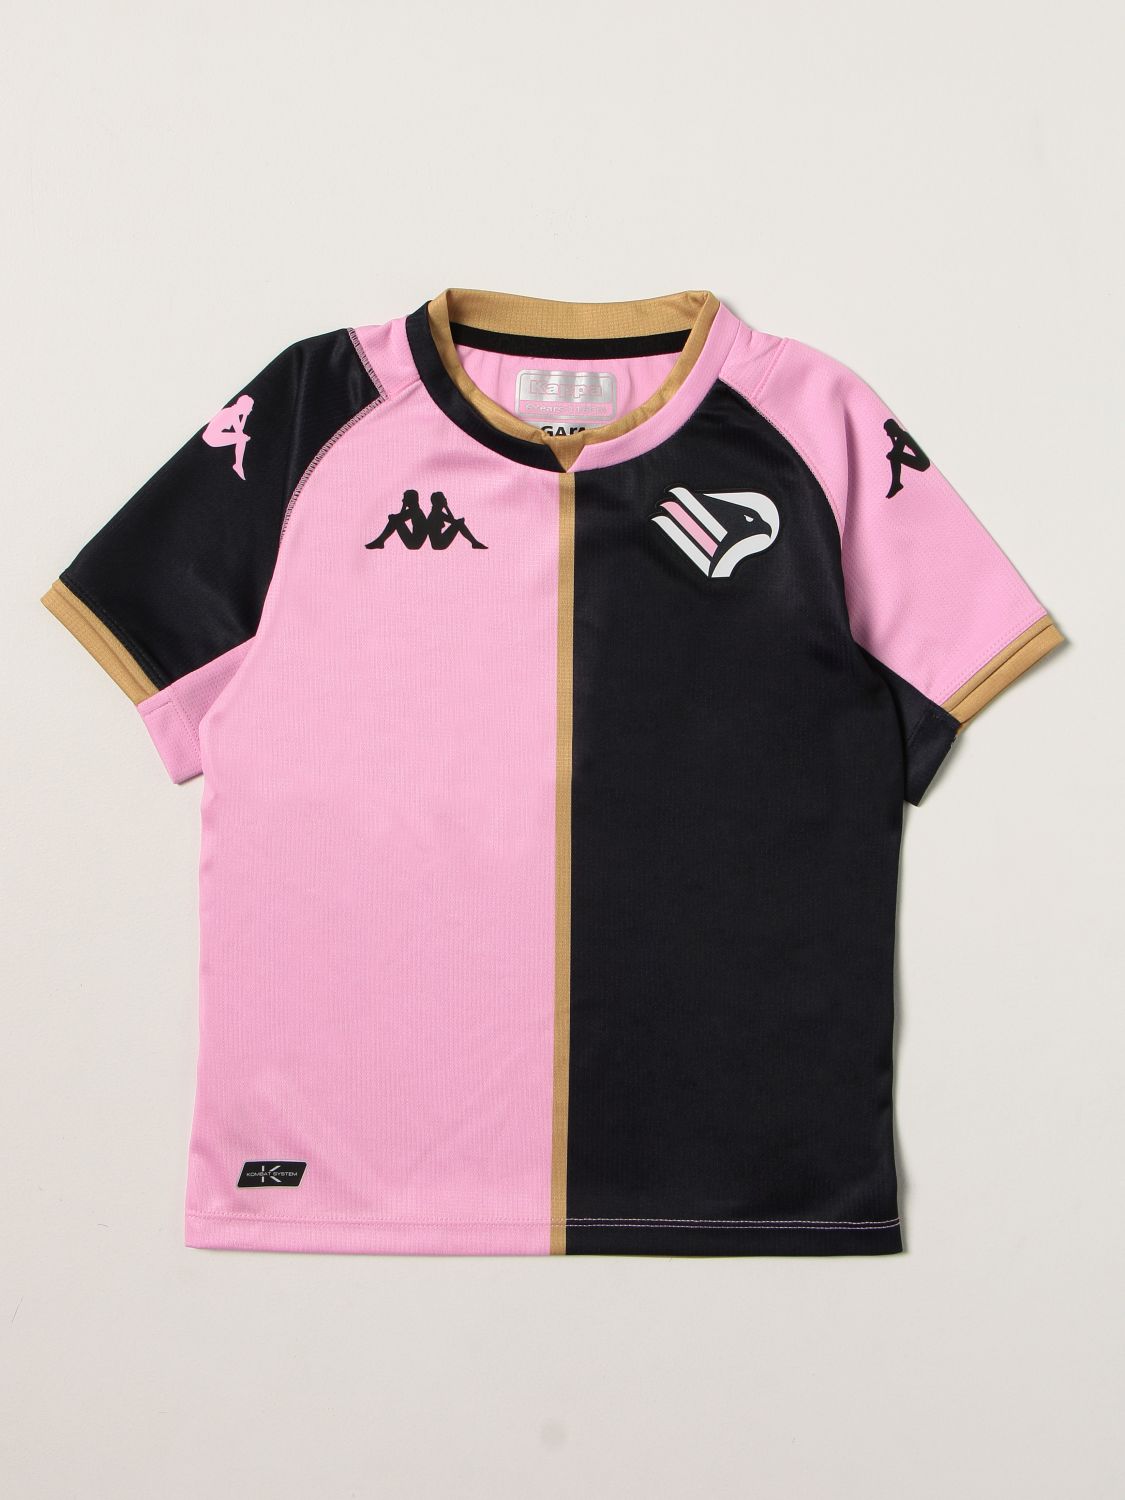 Tシャツ Palermo: Tシャツ 男の子 Palermo ピンク 1